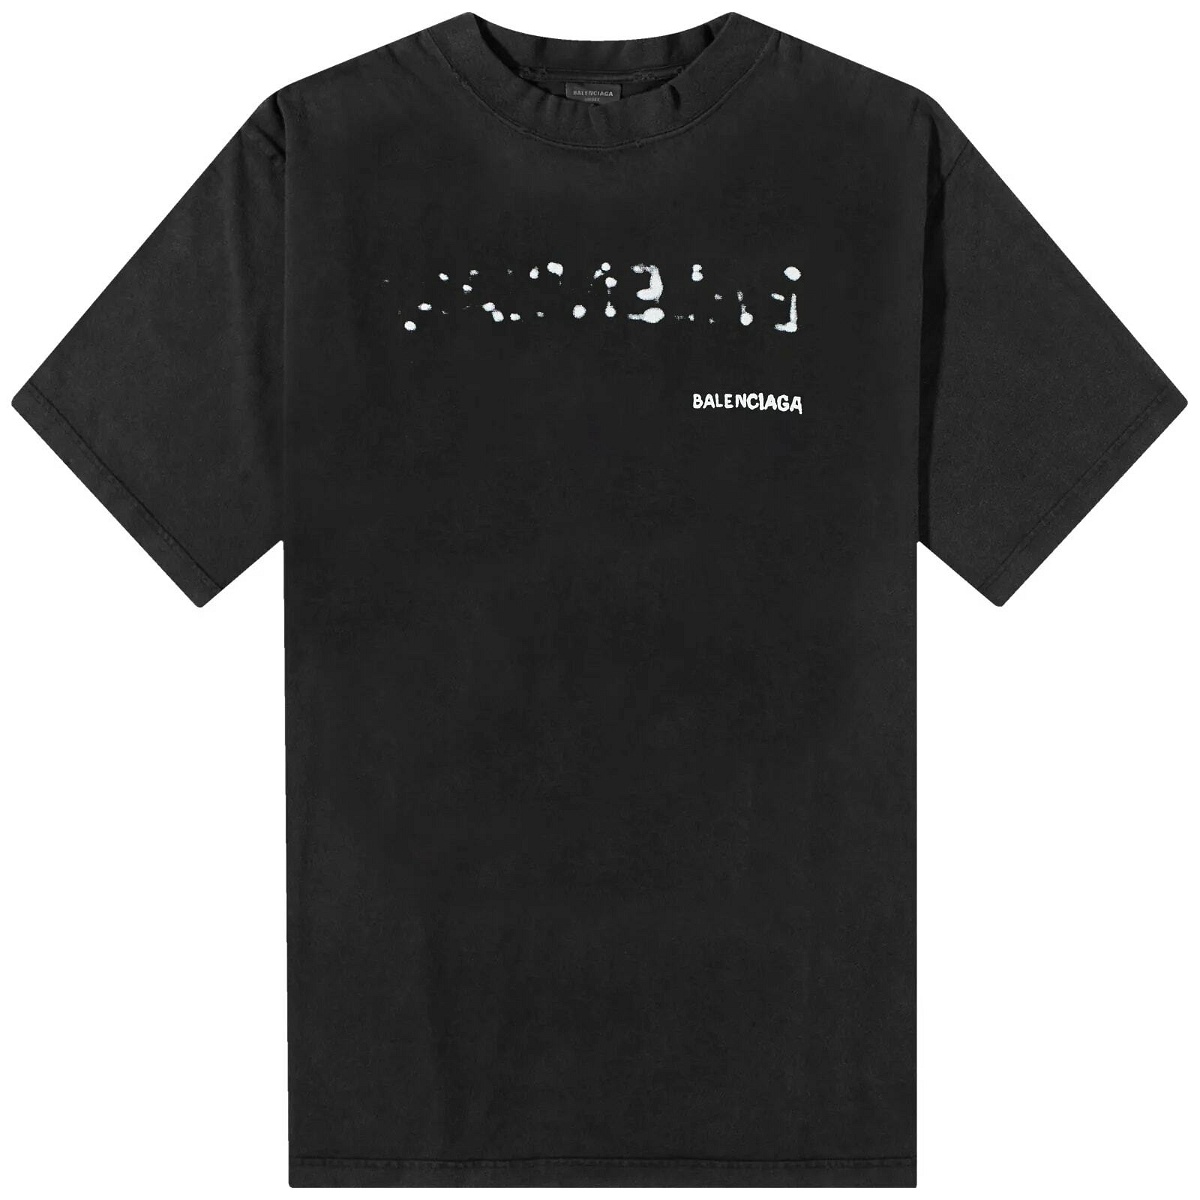 Balenciaga Men's Bleed Logo T-Shirt in Black/White Balenciaga